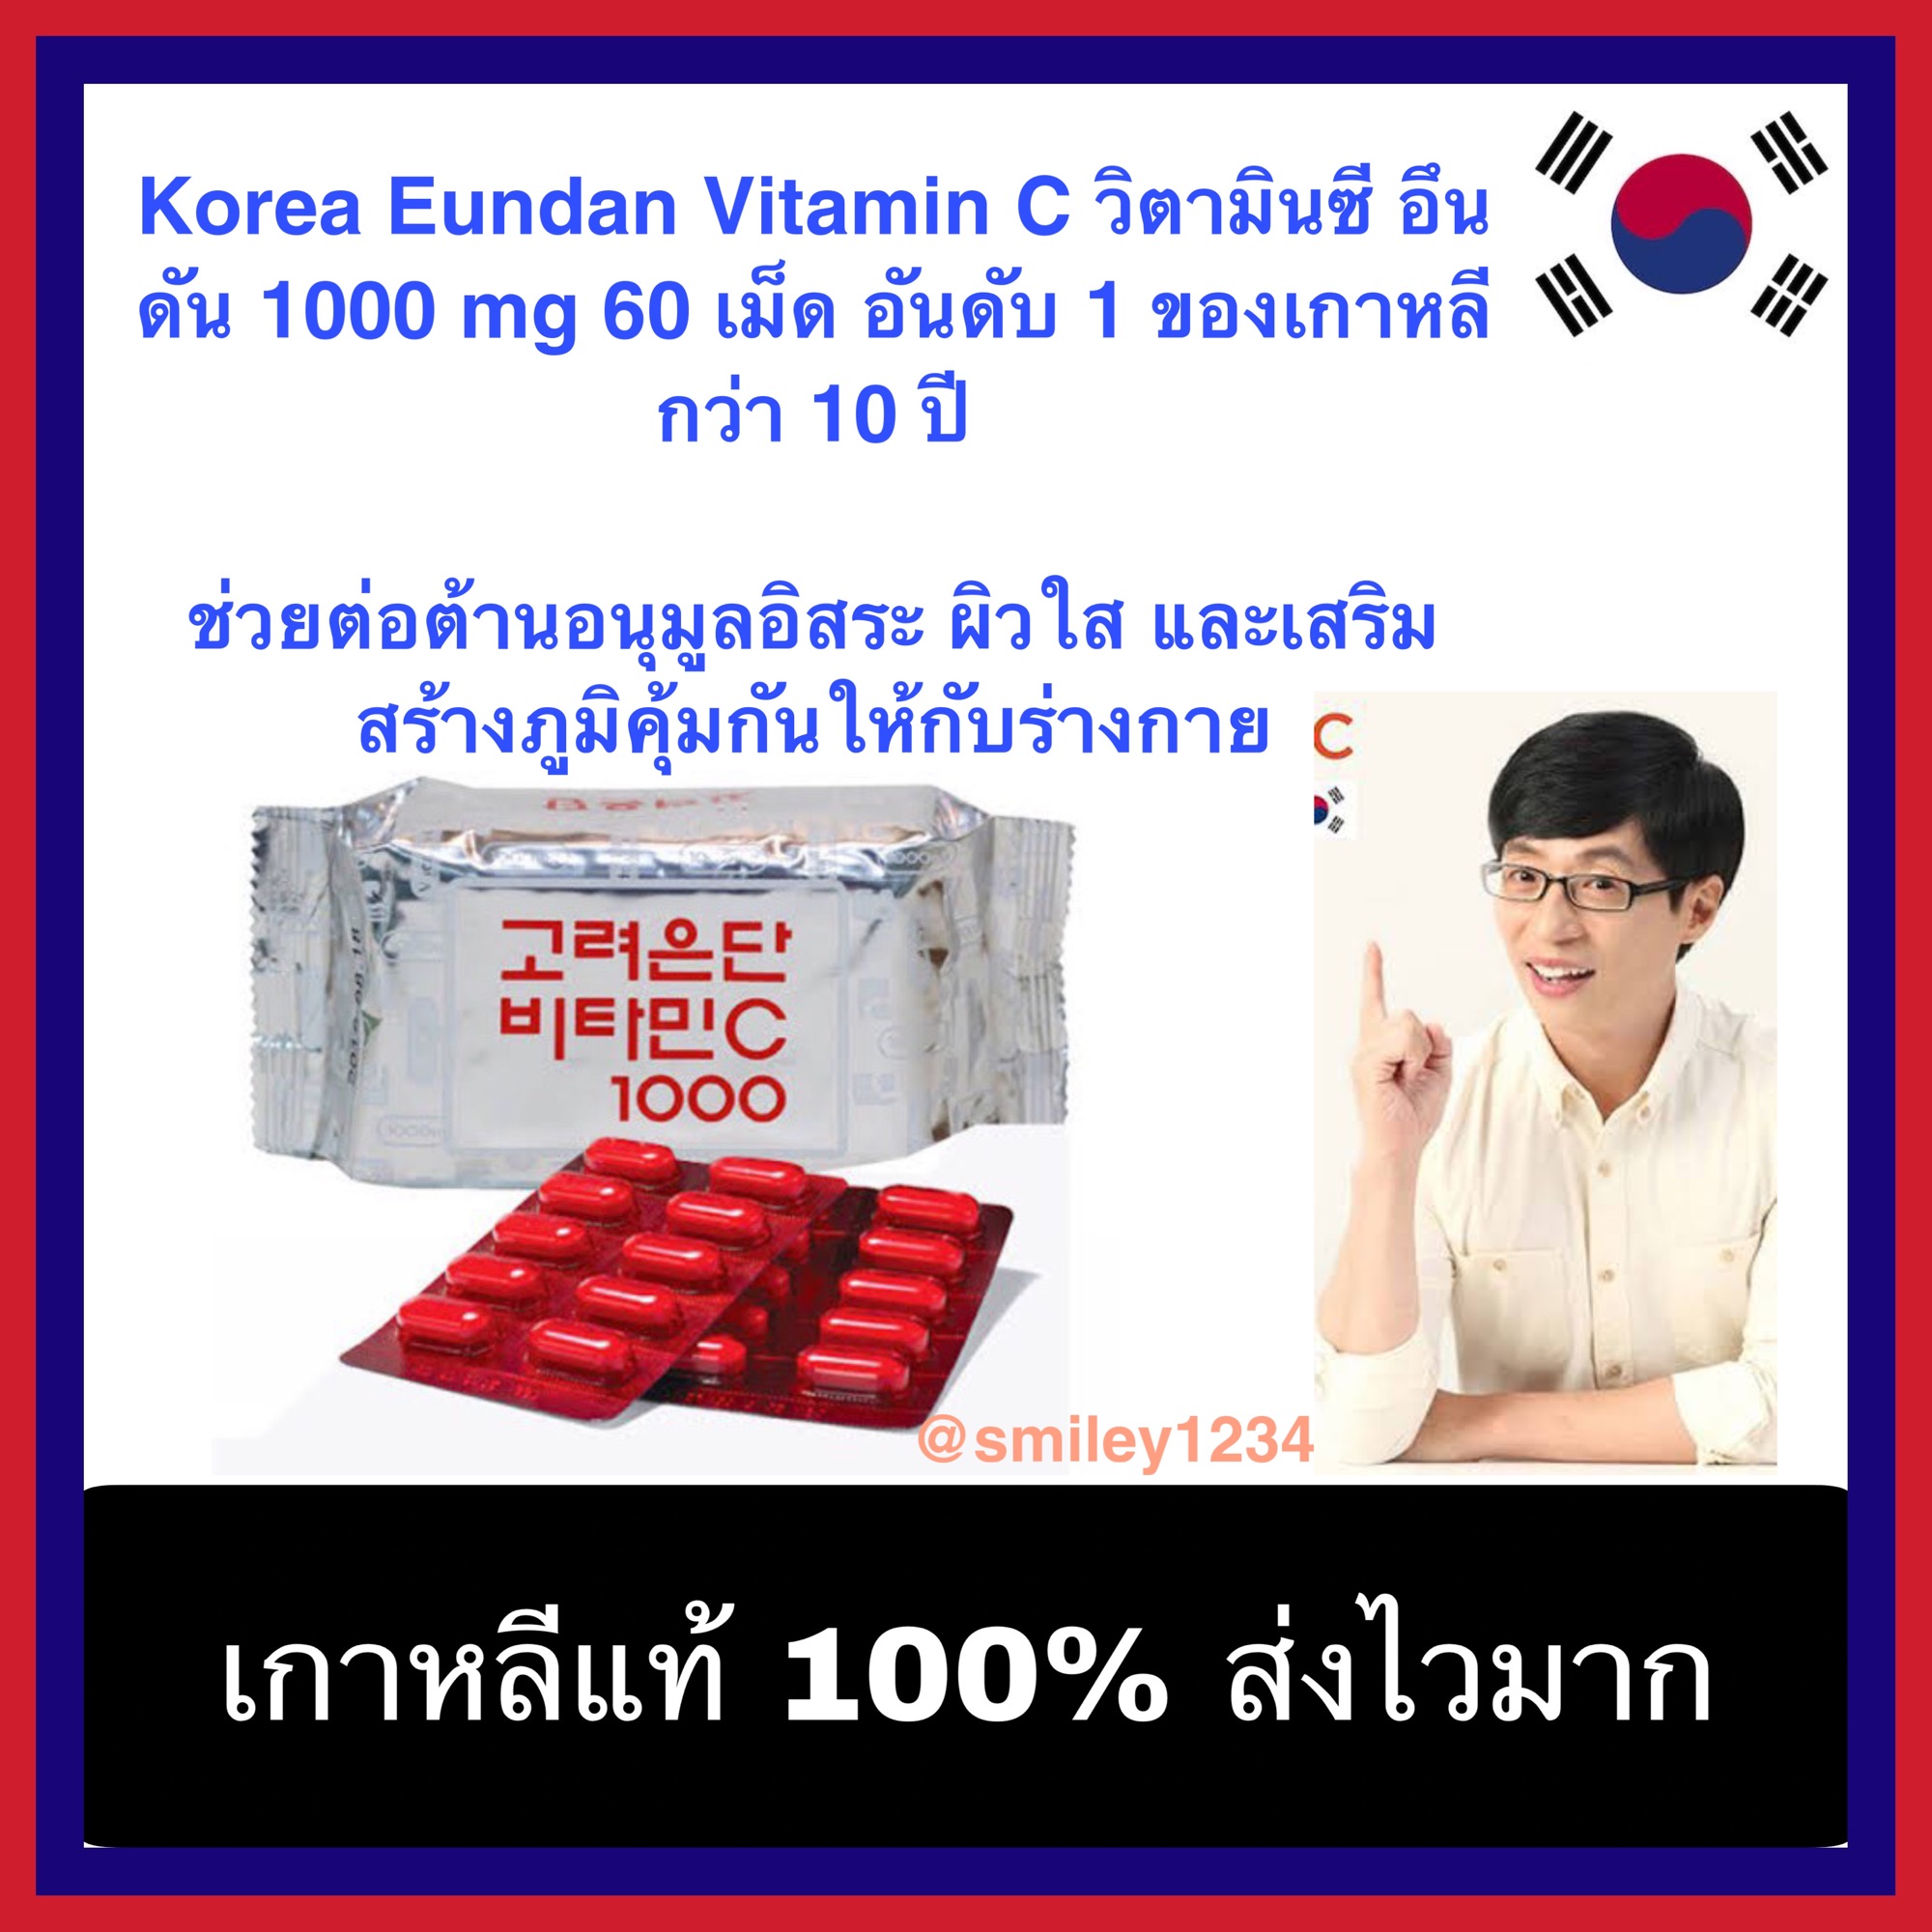 วิตามินซี อึนดัน วิตามินซี Korea Eundan Vitamin C 1000 mg 60 เม็ด (ไม่มีกล่อง) อันดับ 1 ของเกาหลี กว่า 10 ปี